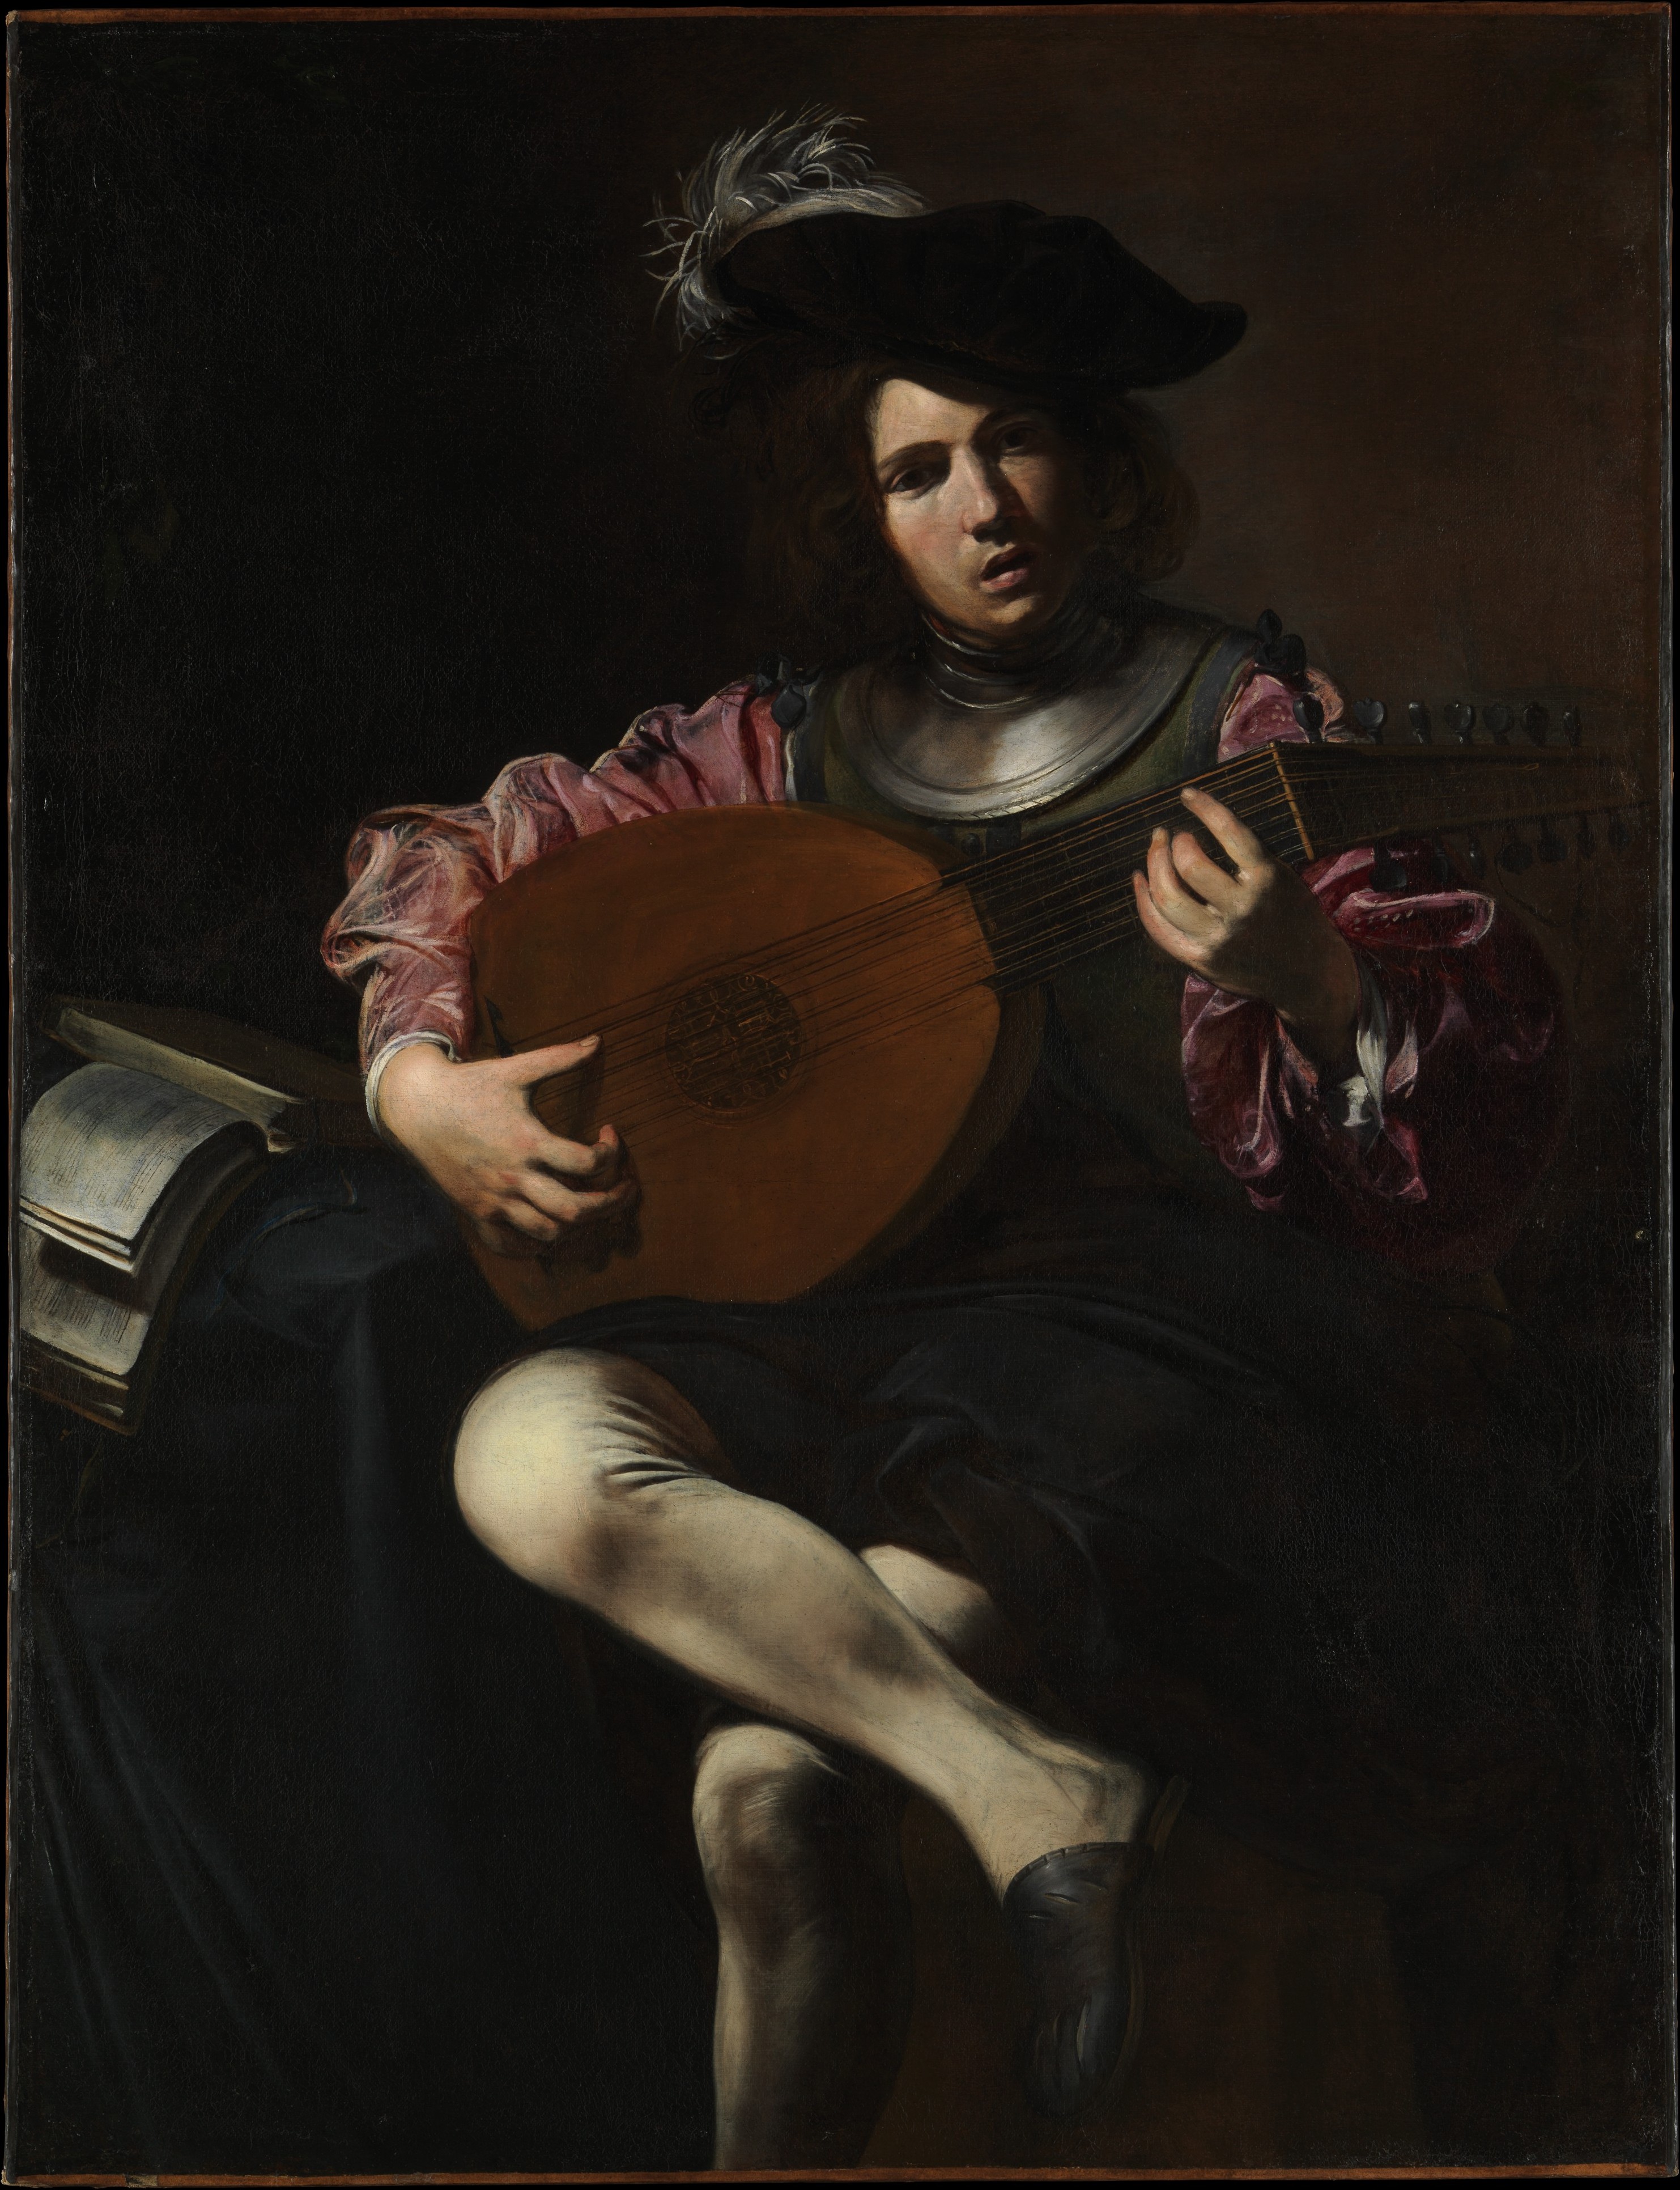 Lute Player by Valentin de Boulogne - ca. 1625–26 - 128.3 x 99.1 cm Metropolitan Museum of Art